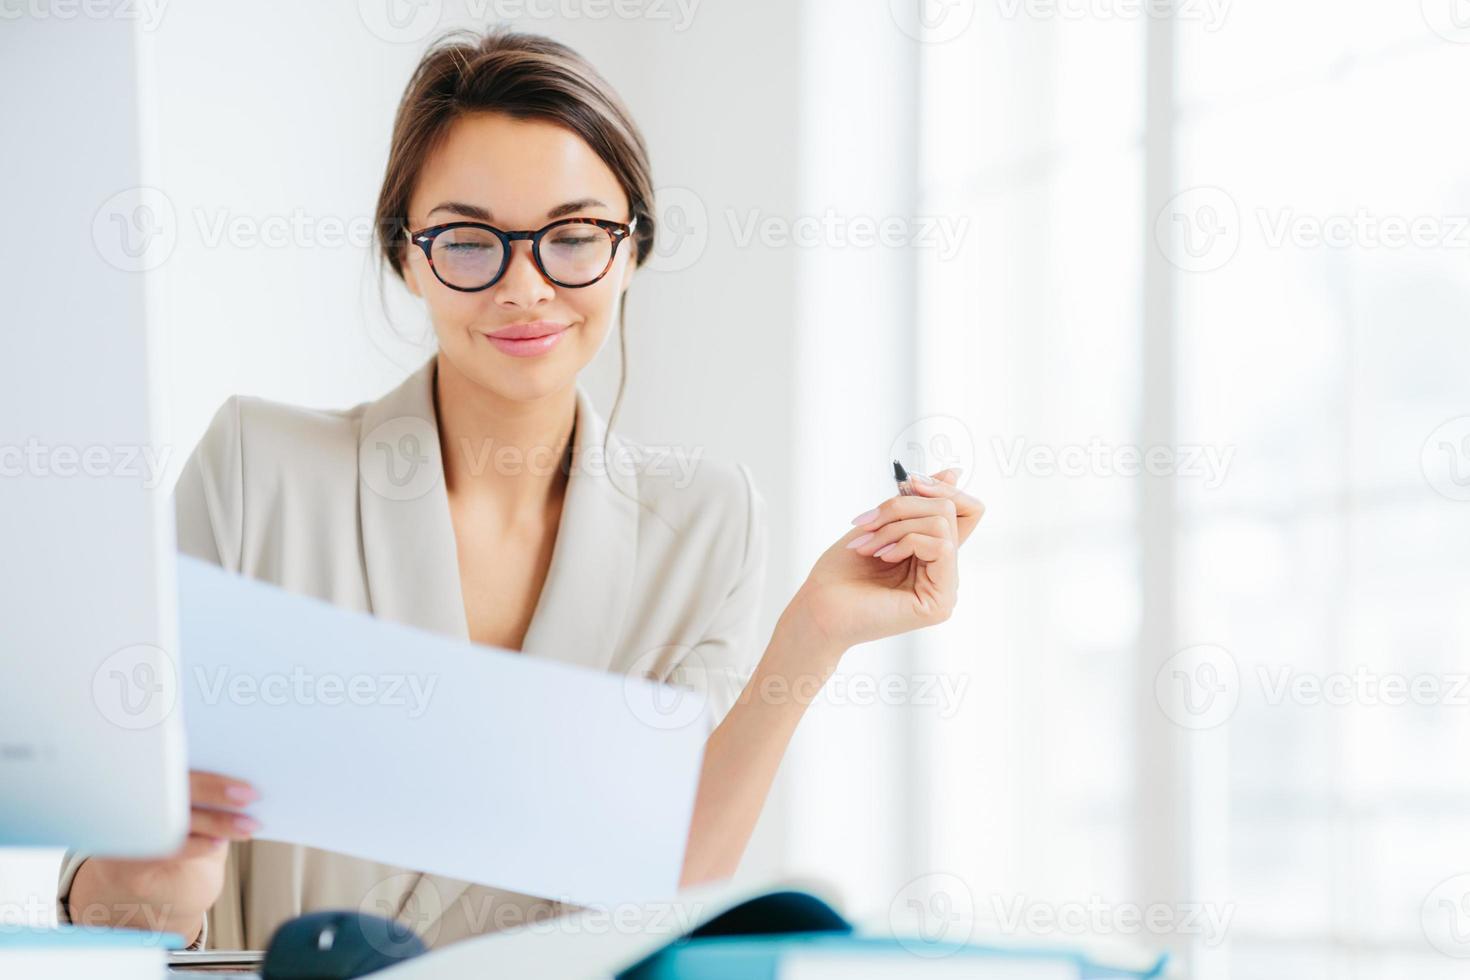 une femme d'affaires concentrée et prospère regarde attentivement le papier, étudie les termes du contrat, tient un stylo, écrit dans des documentations, s'habille formellement, pose au bureau contre un intérieur spacieux blanc photo